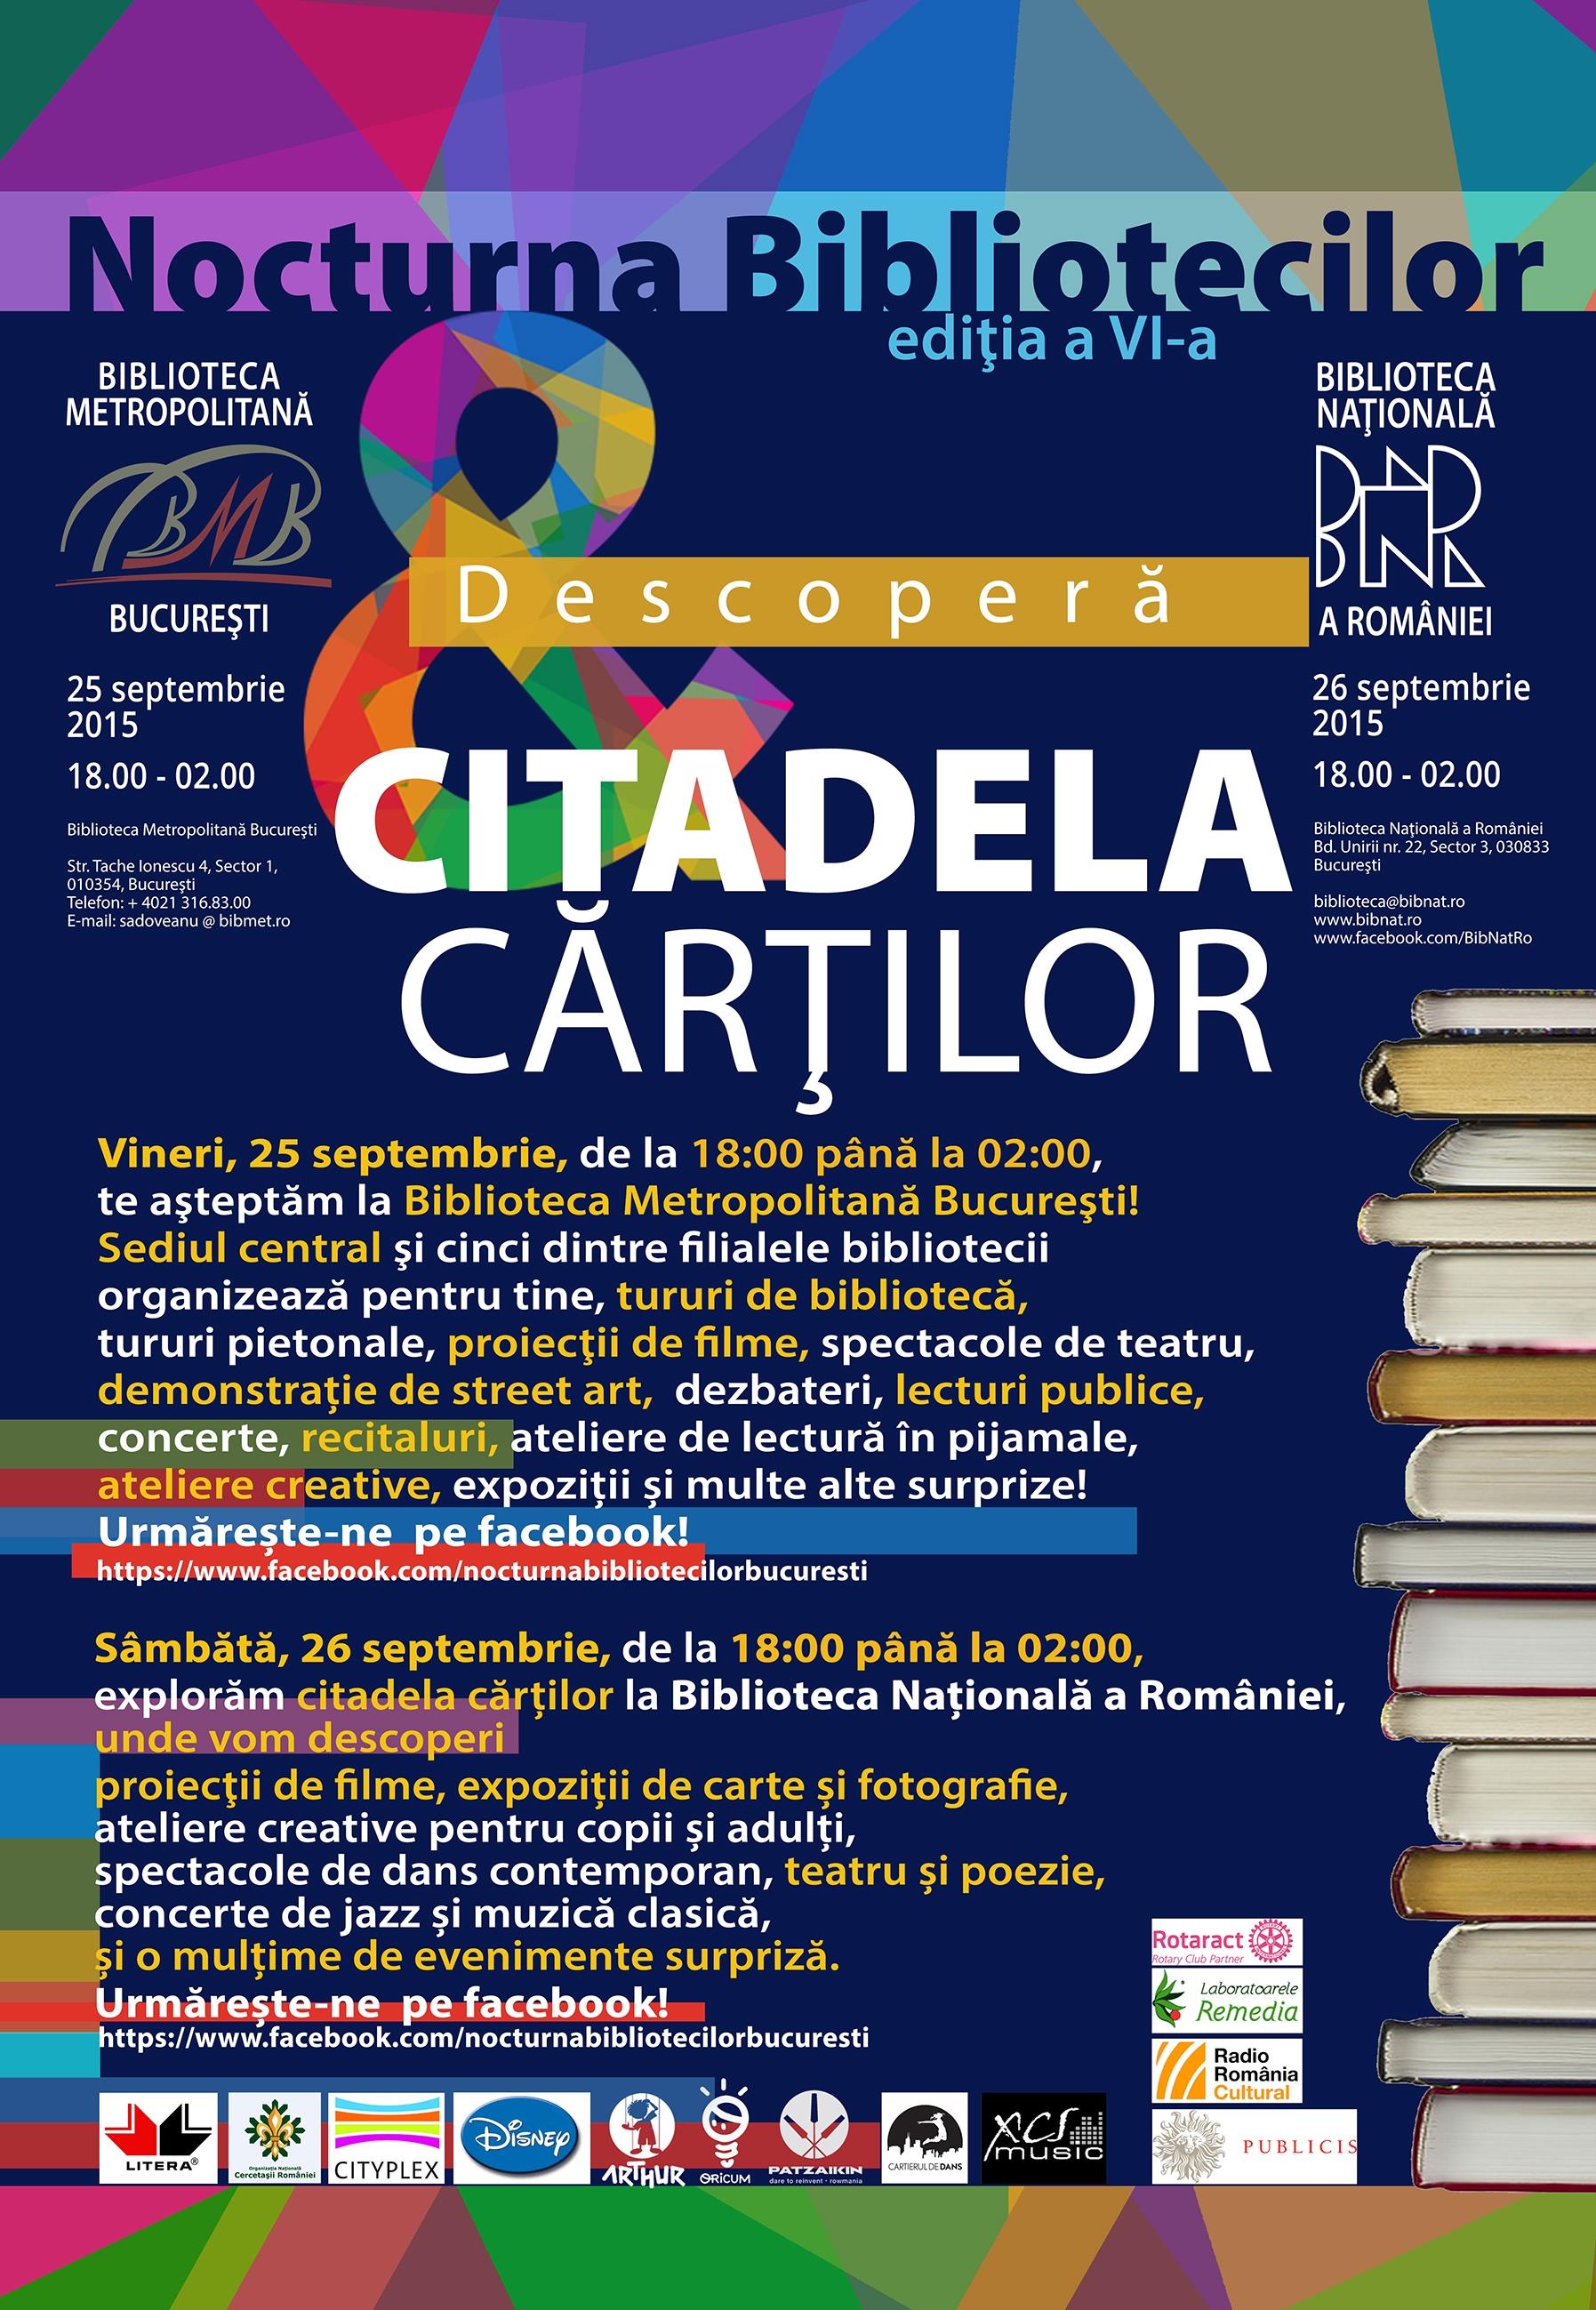 Illusion Regan sponsor Bibliotecile din Bucuresti in "Nocturna bibliotecilor" 25-26 septembrie si  26-27 septembrie - HotNews.ro